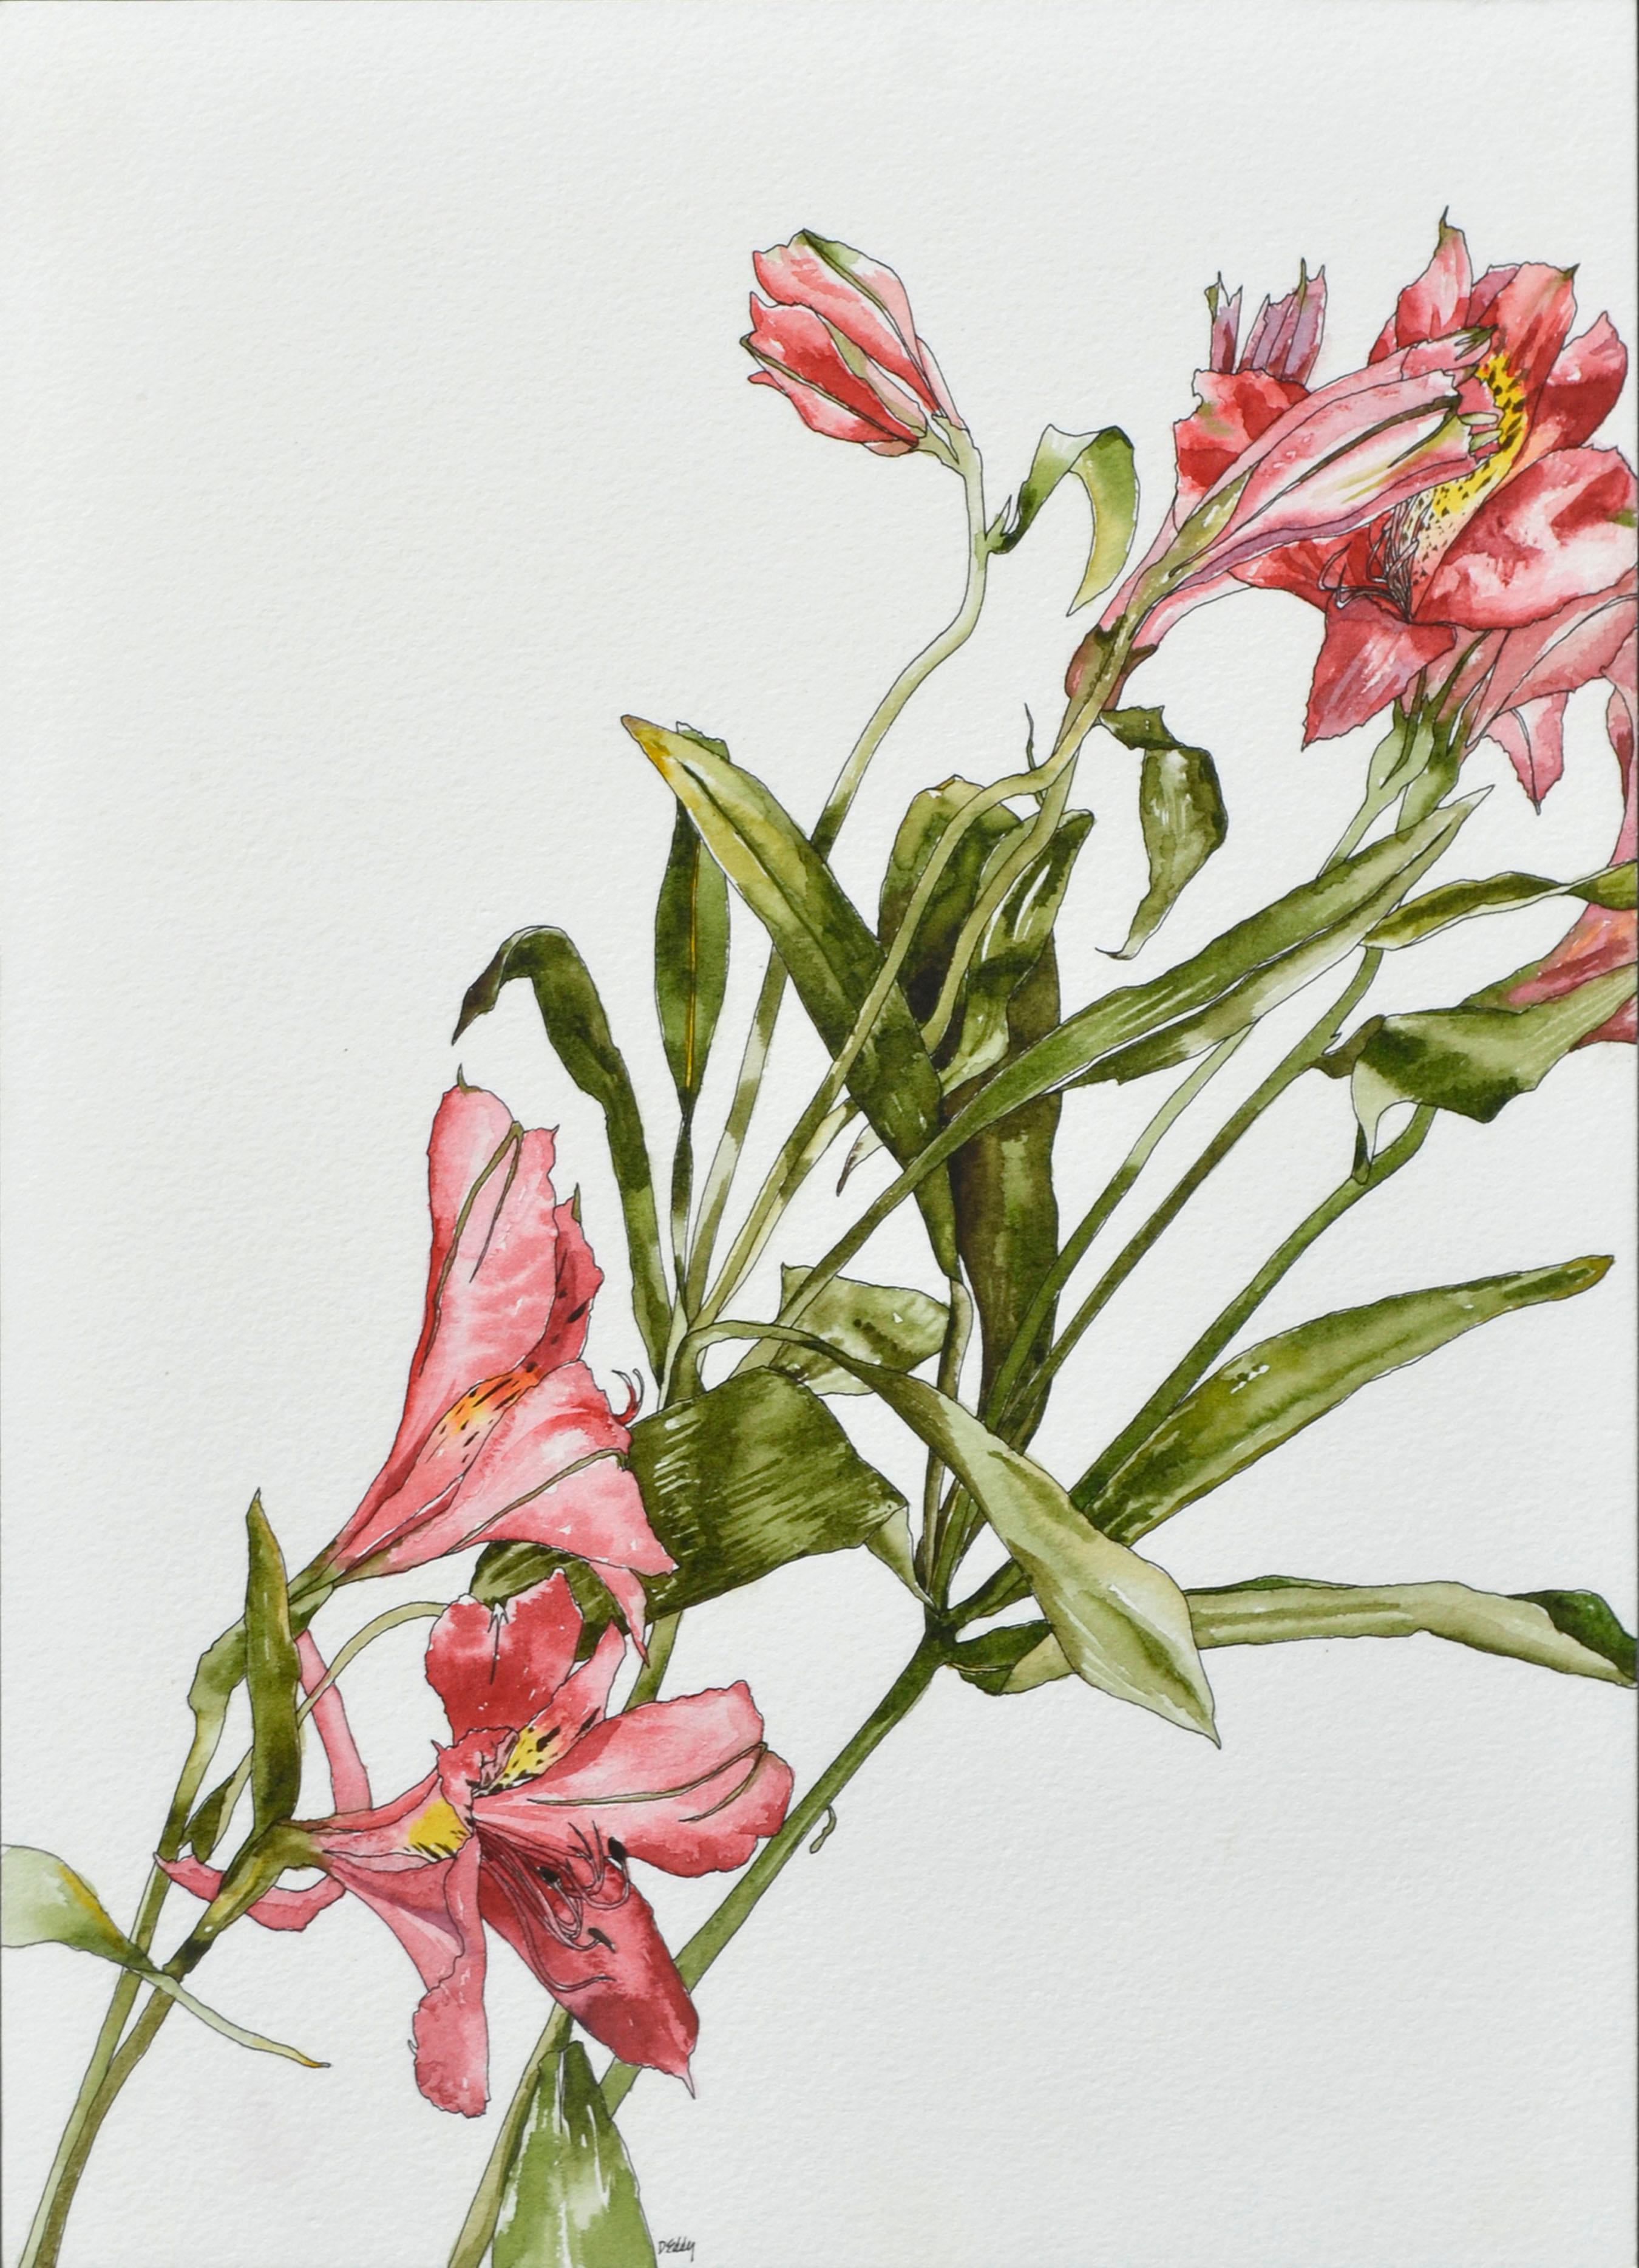 Peruanische Lilie – botanische Studie  – Art von Deborah Eddy